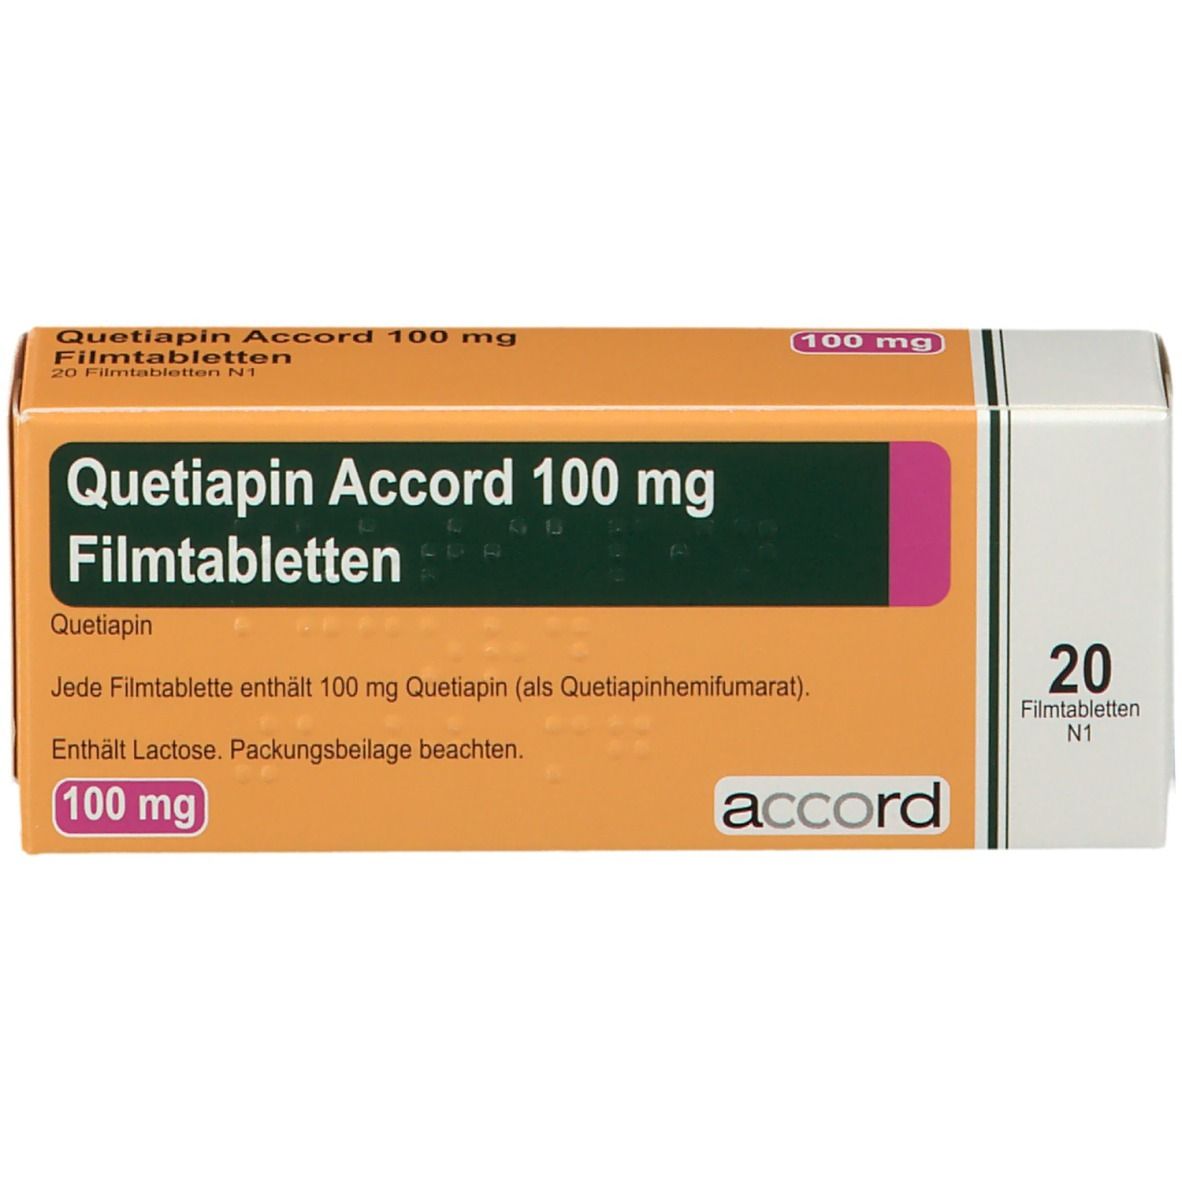 Quetiapin Accord 100 mg